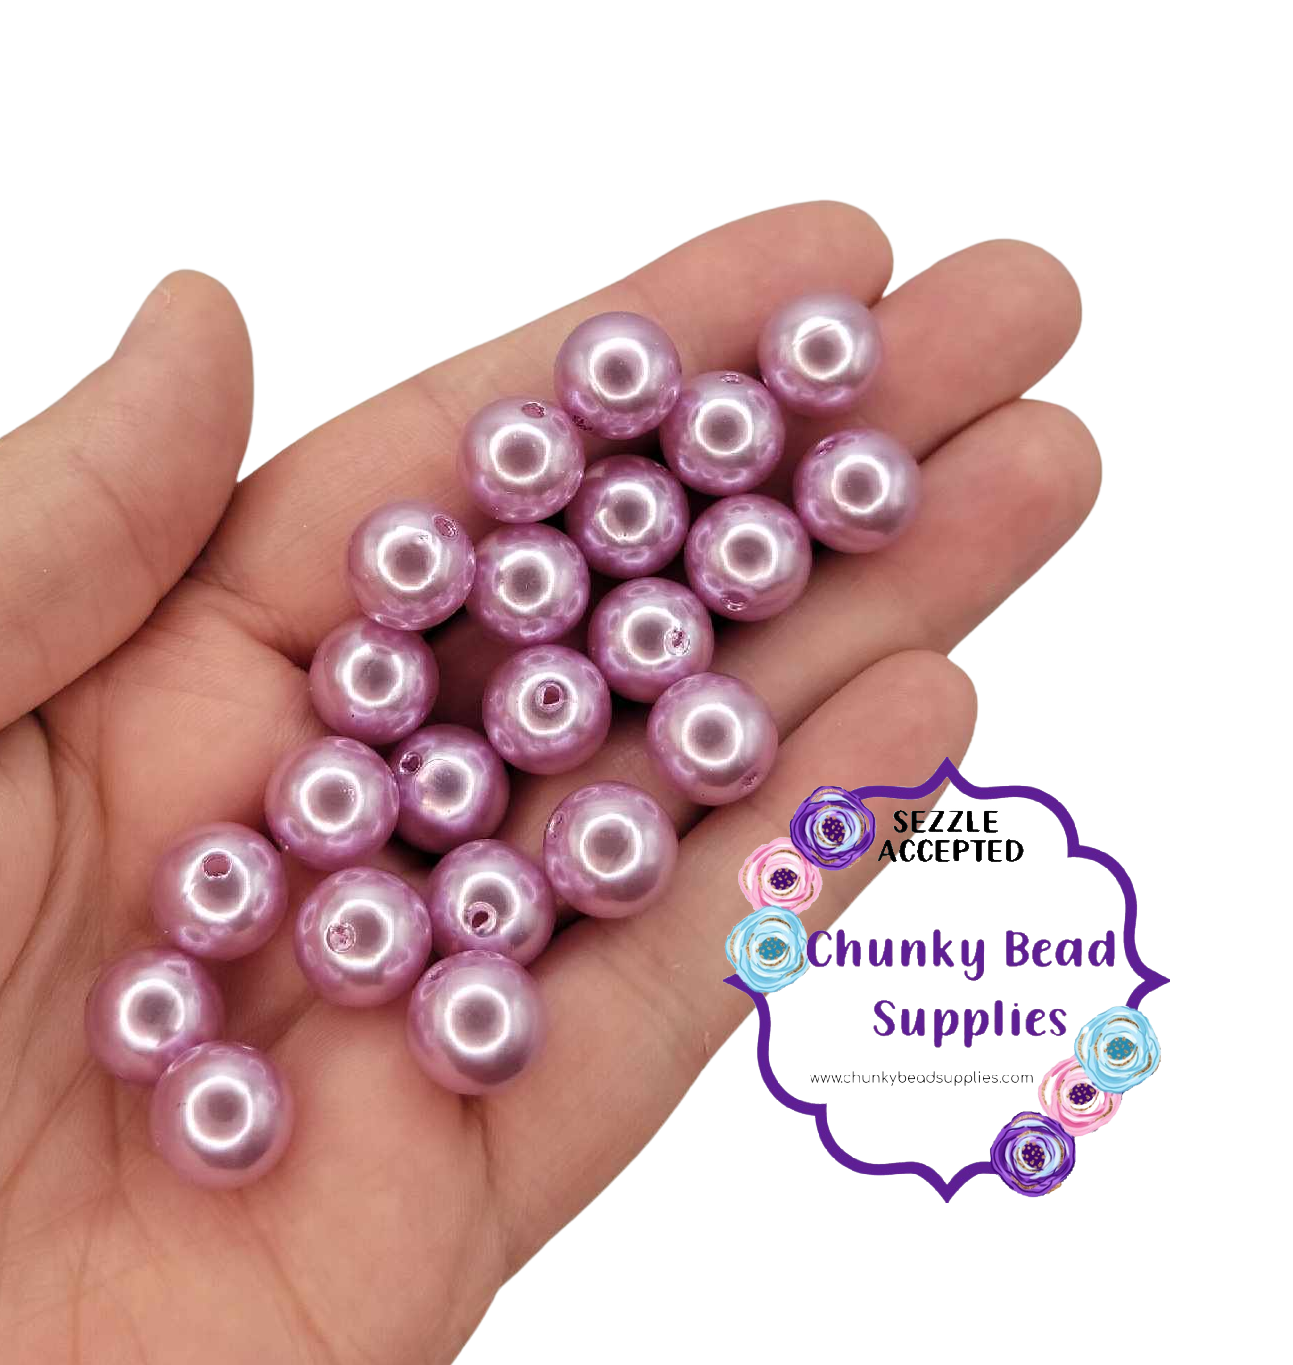 Perlas acrílicas “lila” de 12 mm